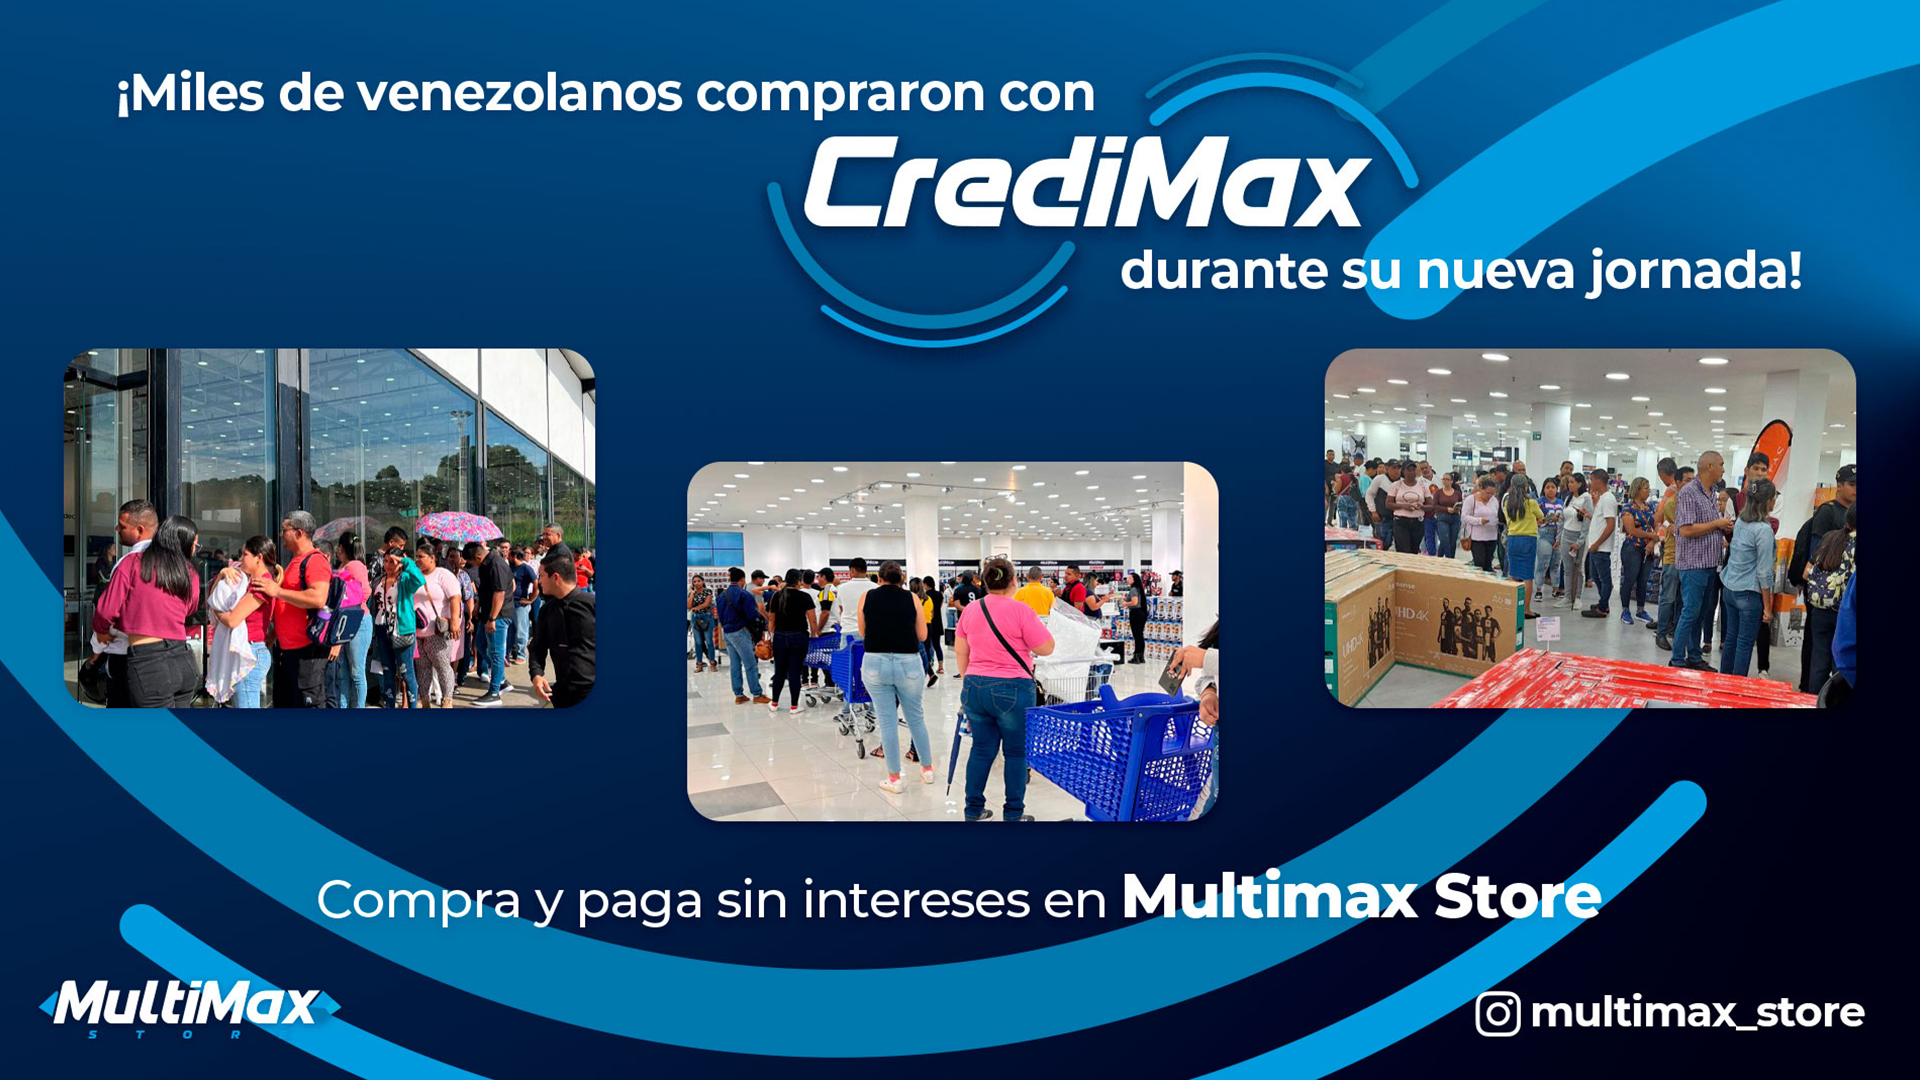 ¡Miles de venezolanos compraron con CrediMax durante su nueva jornada! Compra y paga sin intereses en Multimax Store